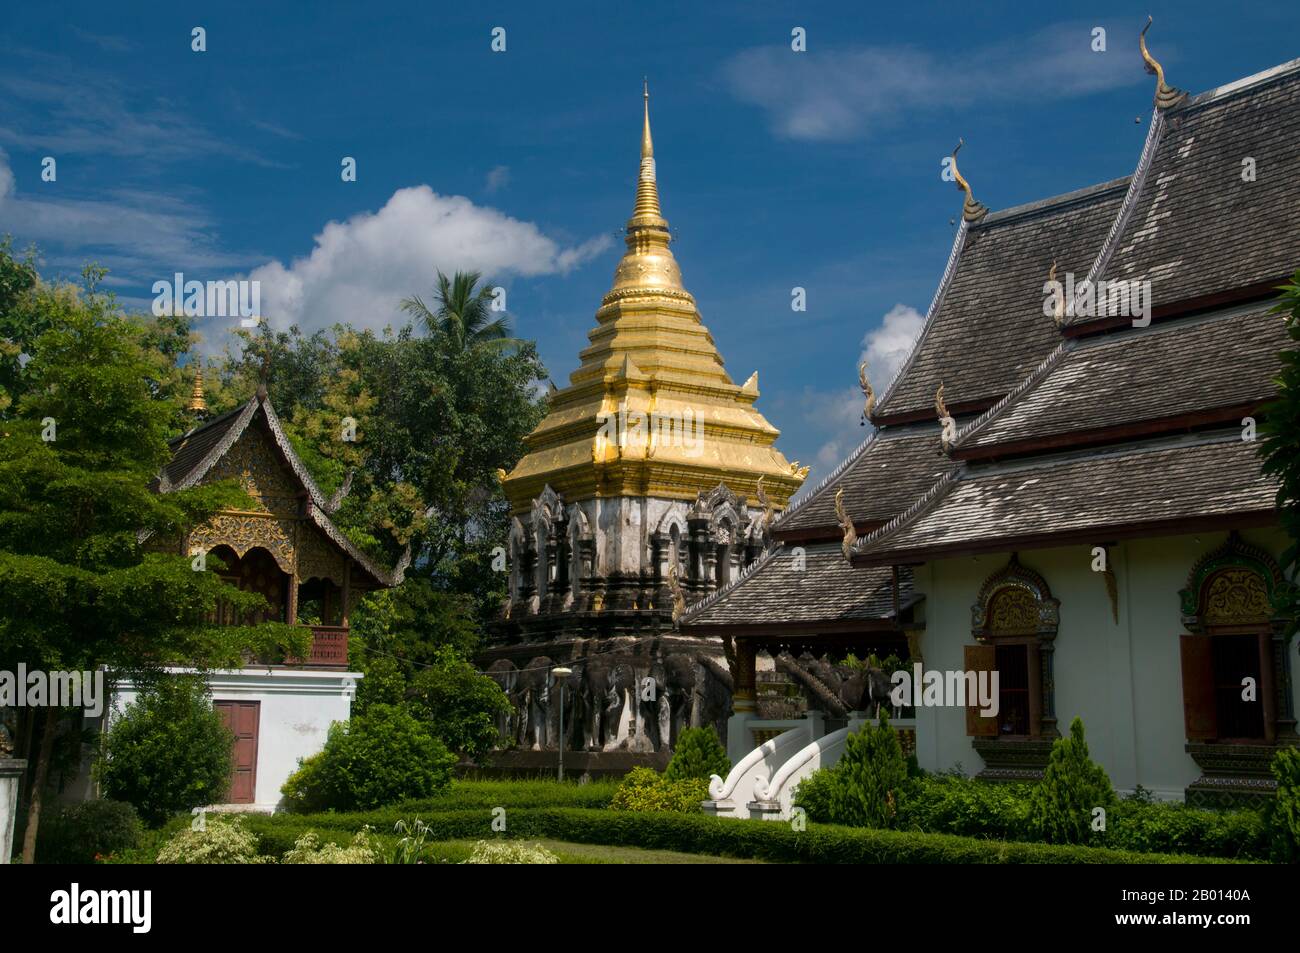 Thaïlande: Ubosot (salle d'ordination), ho trai (bibliothèque), chdi et viharn, Wat Chiang Man, Chiang Mai. Wat Chiang Man (Chiang Mun) a été construit en 1297 EC et est considéré comme le plus ancien temple de Chiang Mai. Il a été construit sur l'endroit qui avait été utilisé par le roi Mangrai comme camp pendant la construction de sa nouvelle capitale Chiang Mai. Chiang Mai (signifiant « nouvelle ville »), parfois écrit comme « Chiengmai » ou « Chiangmai », est la ville la plus importante et la plus importante sur le plan culturel du nord de la Thaïlande. Le roi Mengrai fonda la ville de Chiang Mai en 1296, et il succéda à Chiang Rai comme capitale du royaume de Lanna Banque D'Images